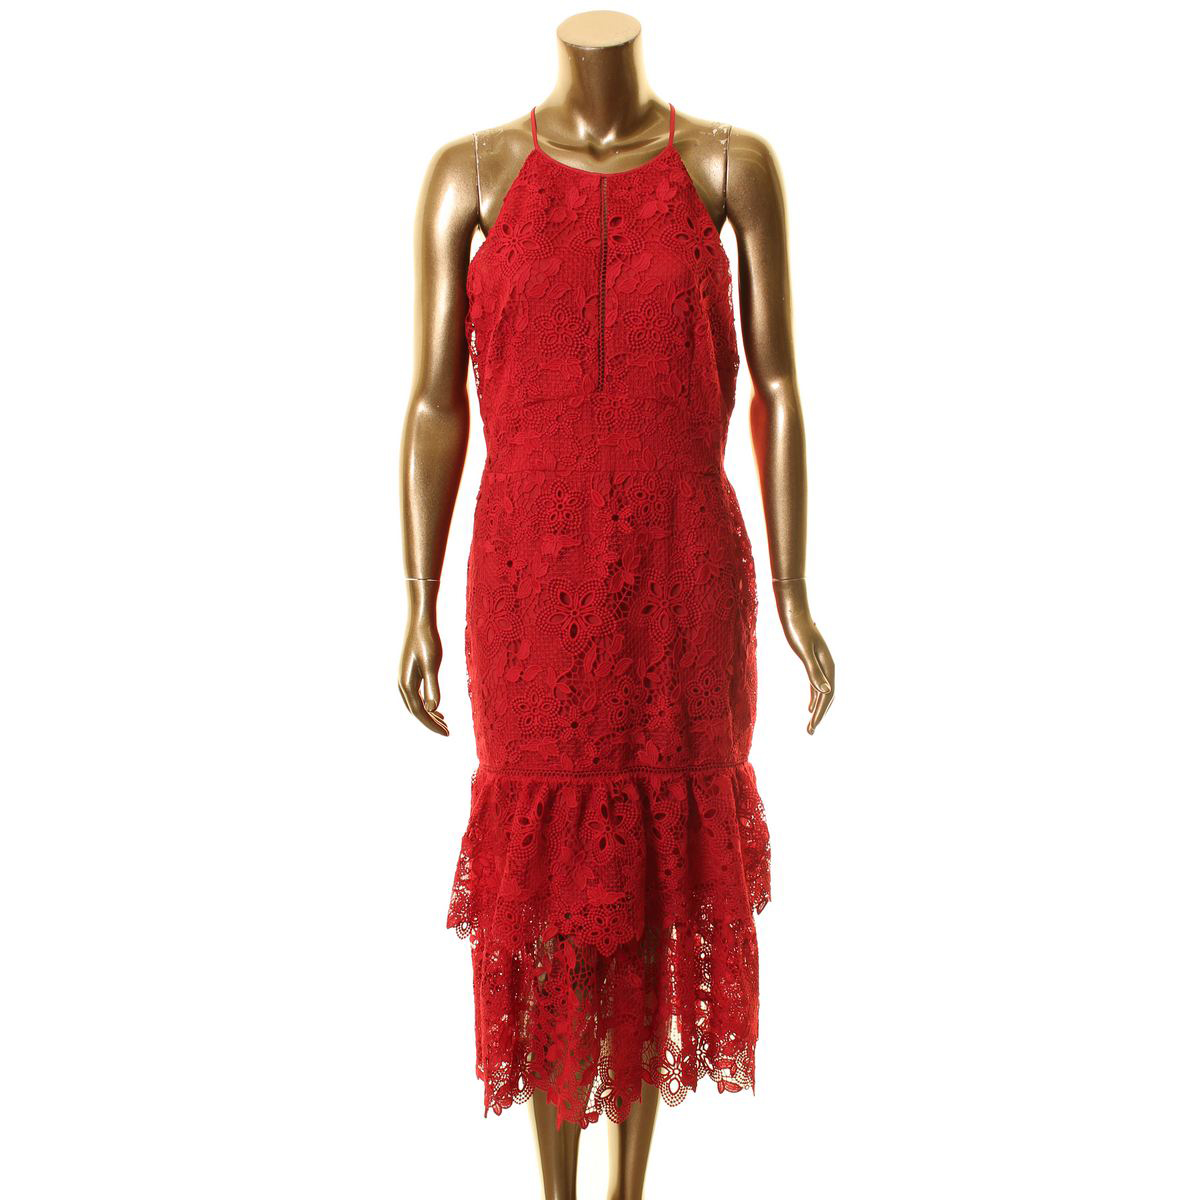 rachel zoe red lace dress